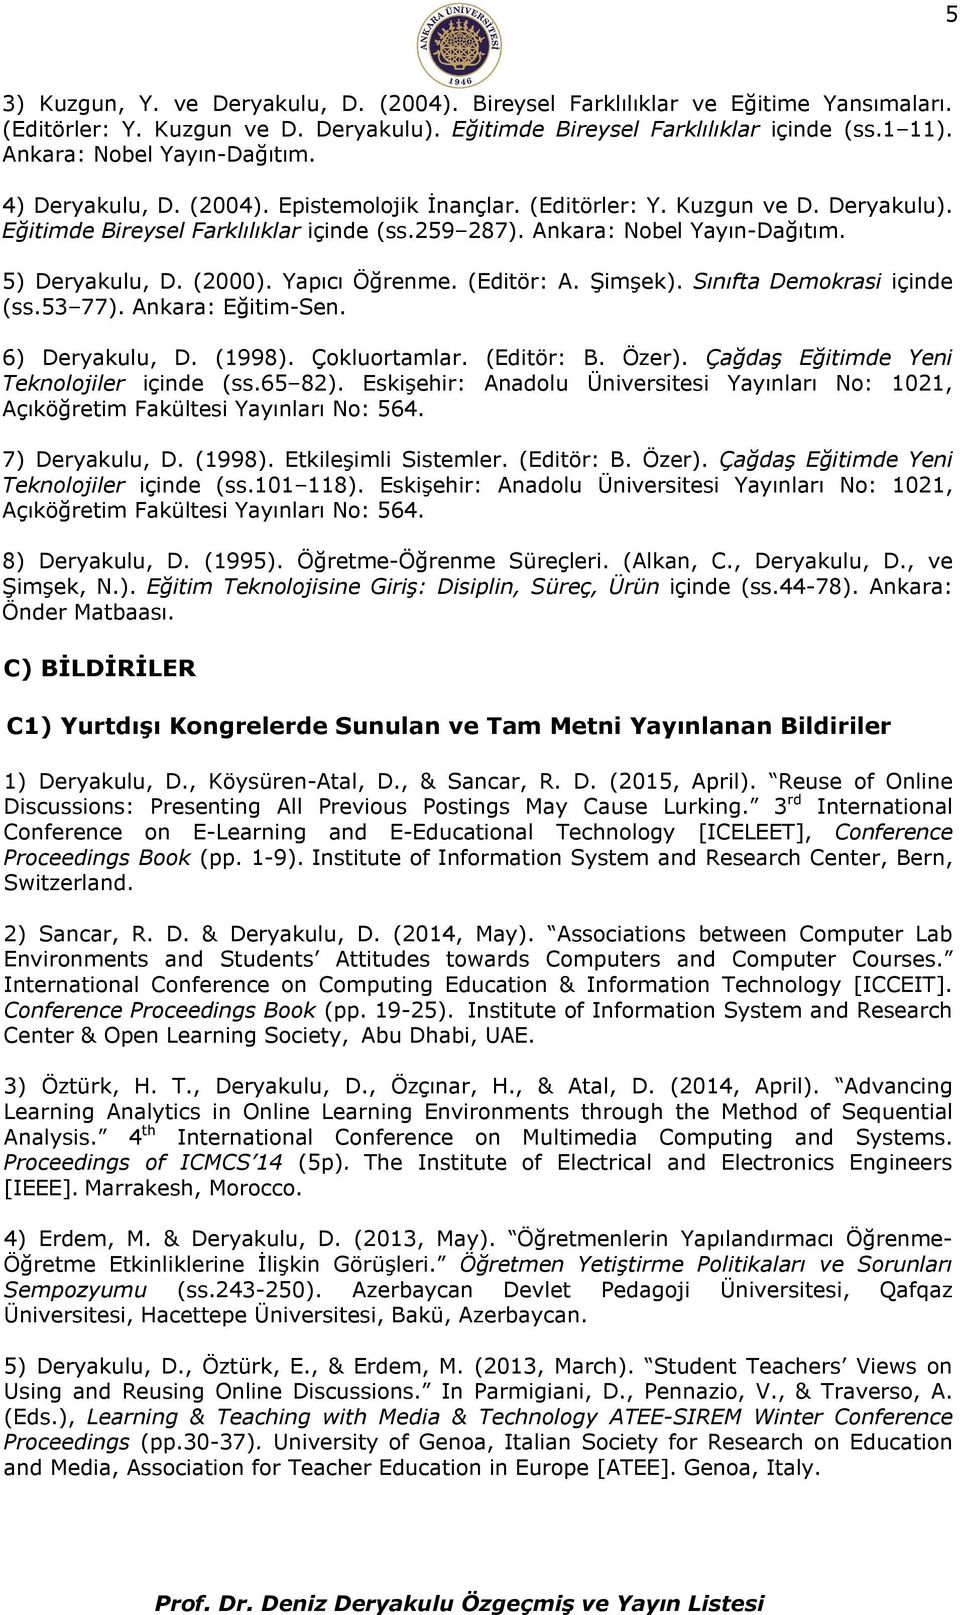 5) Deryakulu, D. (2000). Yapıcı Öğrenme. (Editör: A. Şimşek). Sınıfta Demokrasi içinde (ss.53 77). Ankara: Eğitim-Sen. 6) Deryakulu, D. (1998). Çokluortamlar. (Editör: B. Özer).